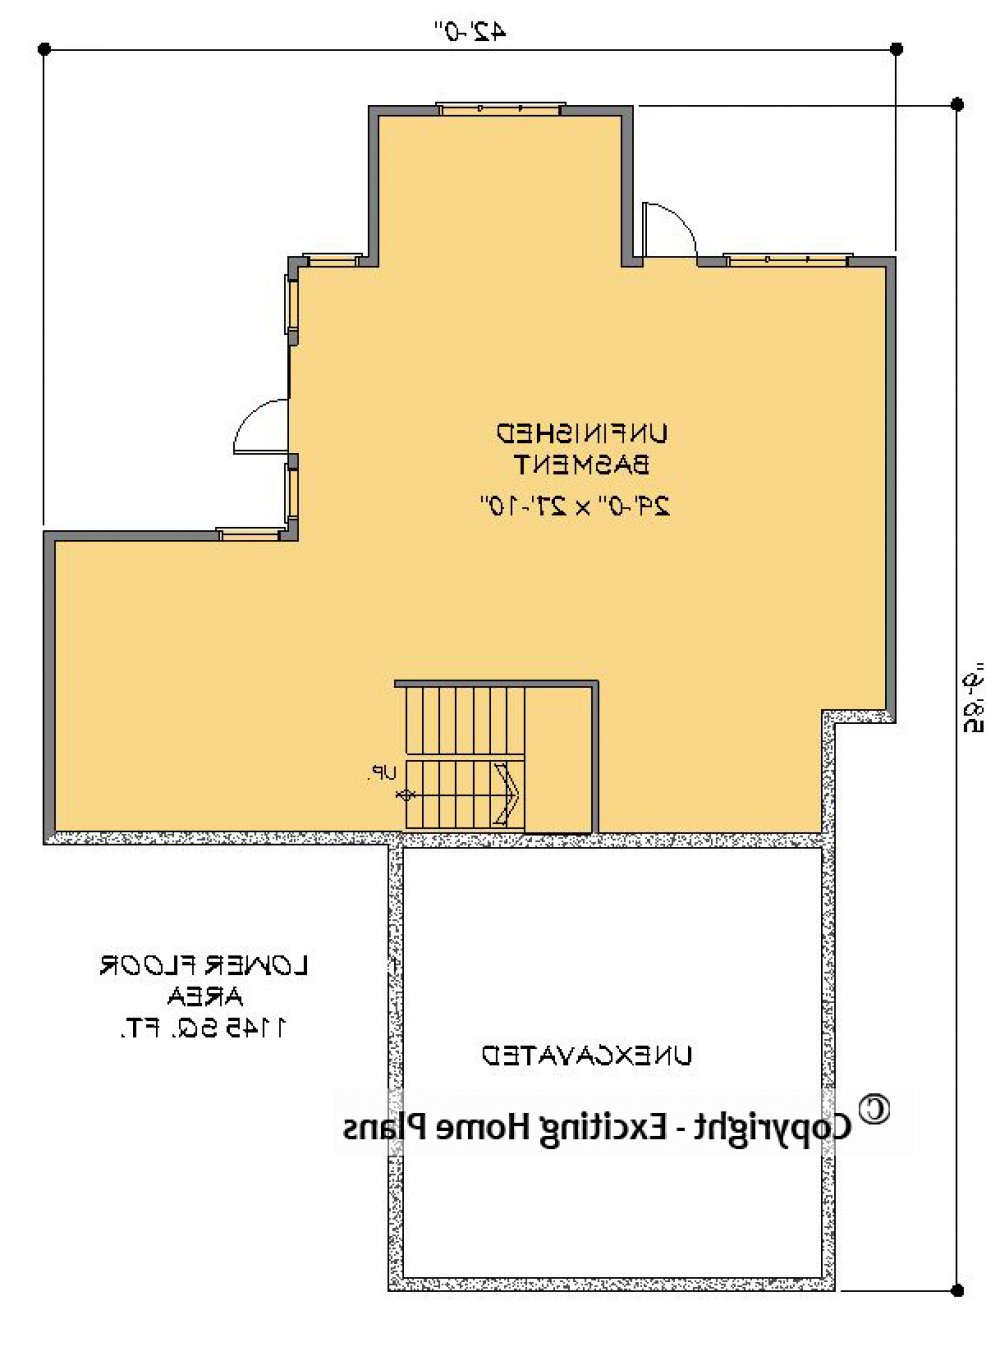 House Plan E1492-10 Lower Floor Plan REVERSE